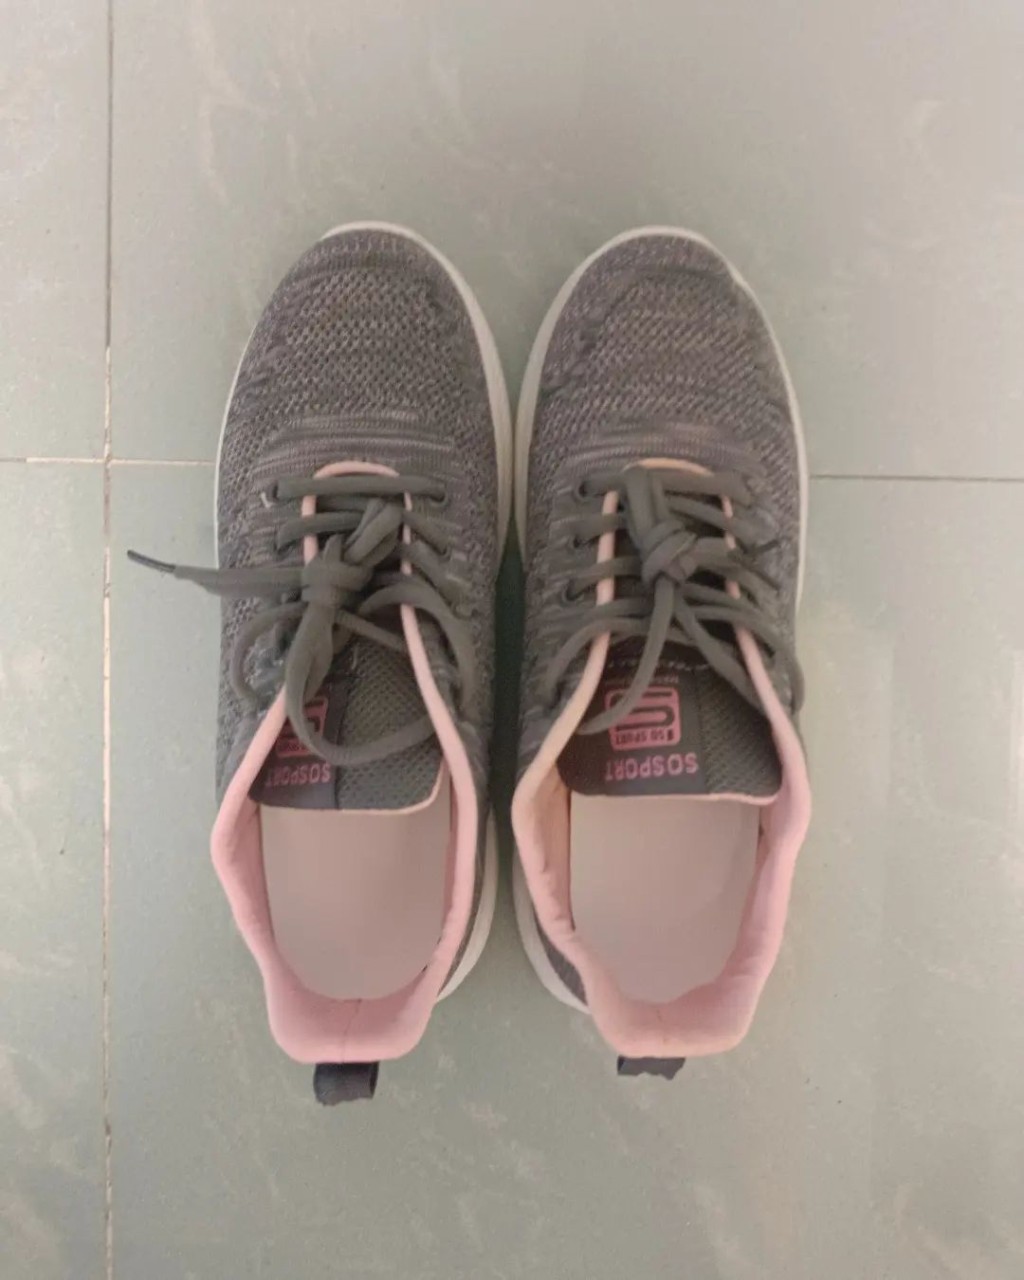 之后薛影仪晒一双只售60蚊的深灰拼粉红的不知名品牌波鞋，估计是为出战明年1月举办的渣打马拉松作准备。